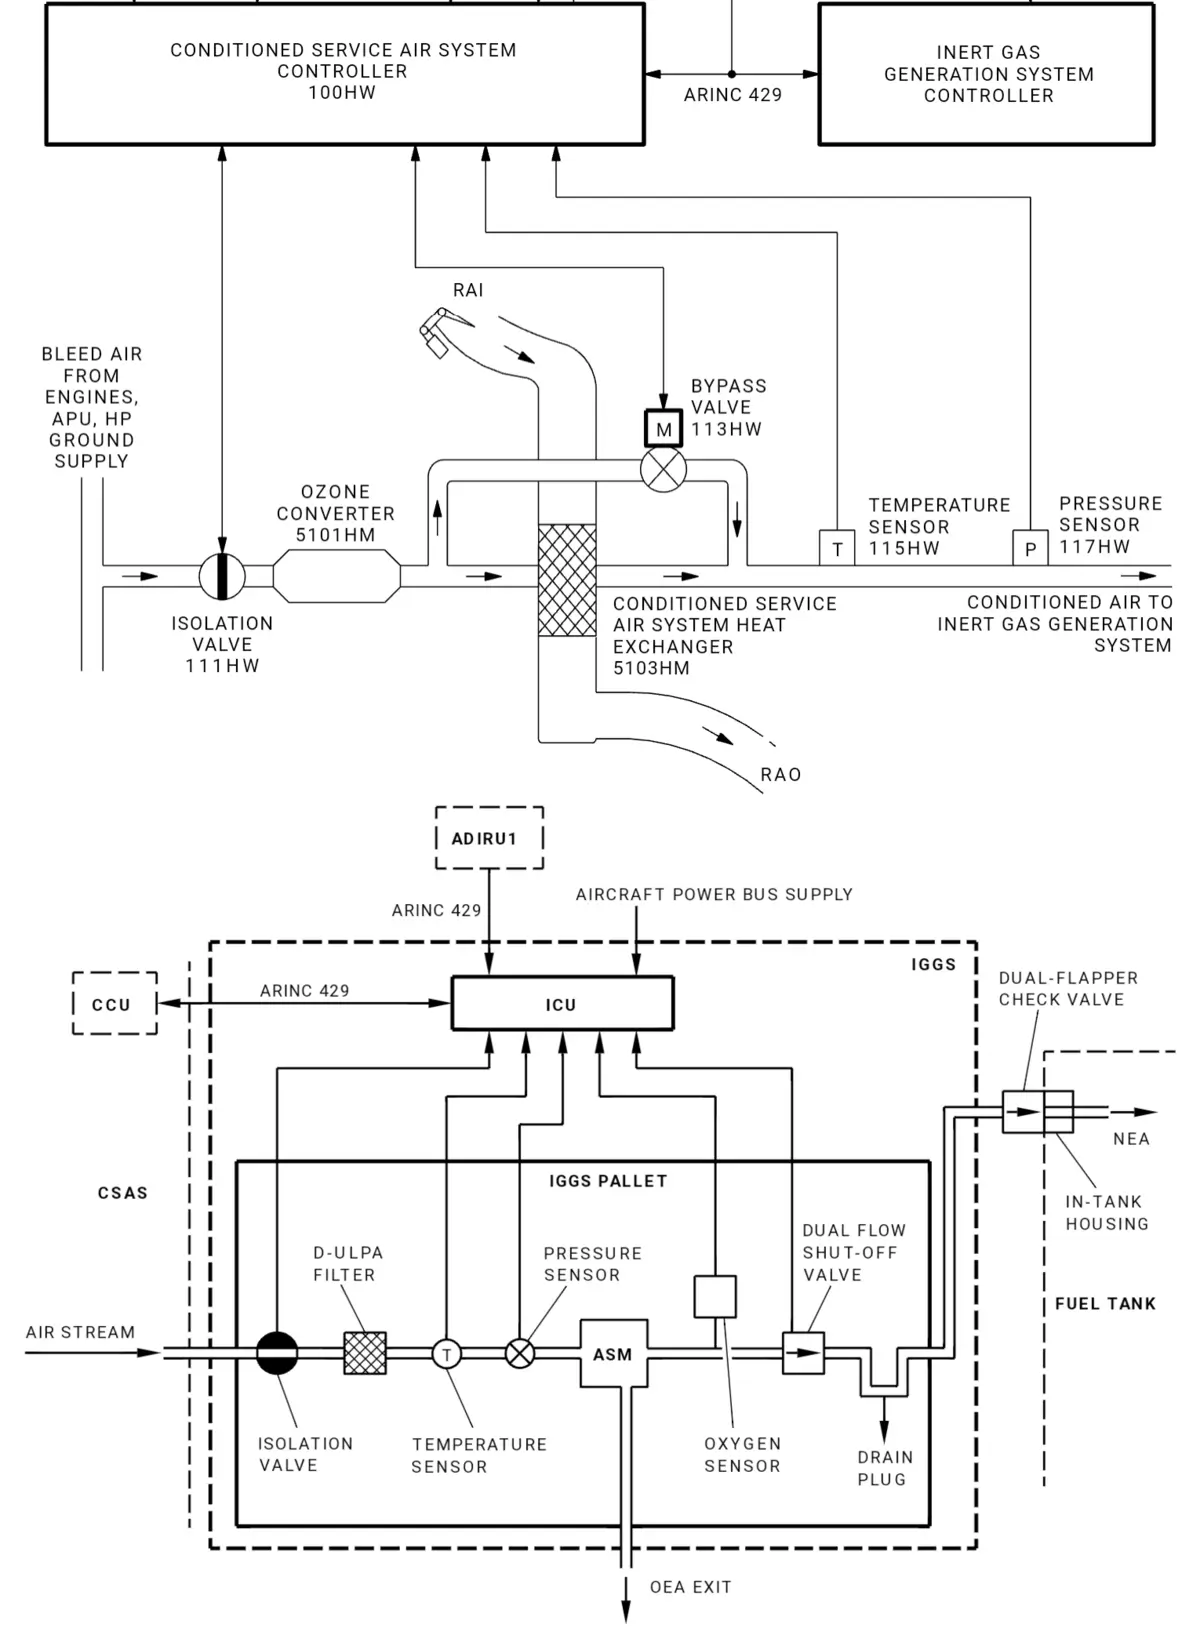 A320 Inert Gas System Schematic